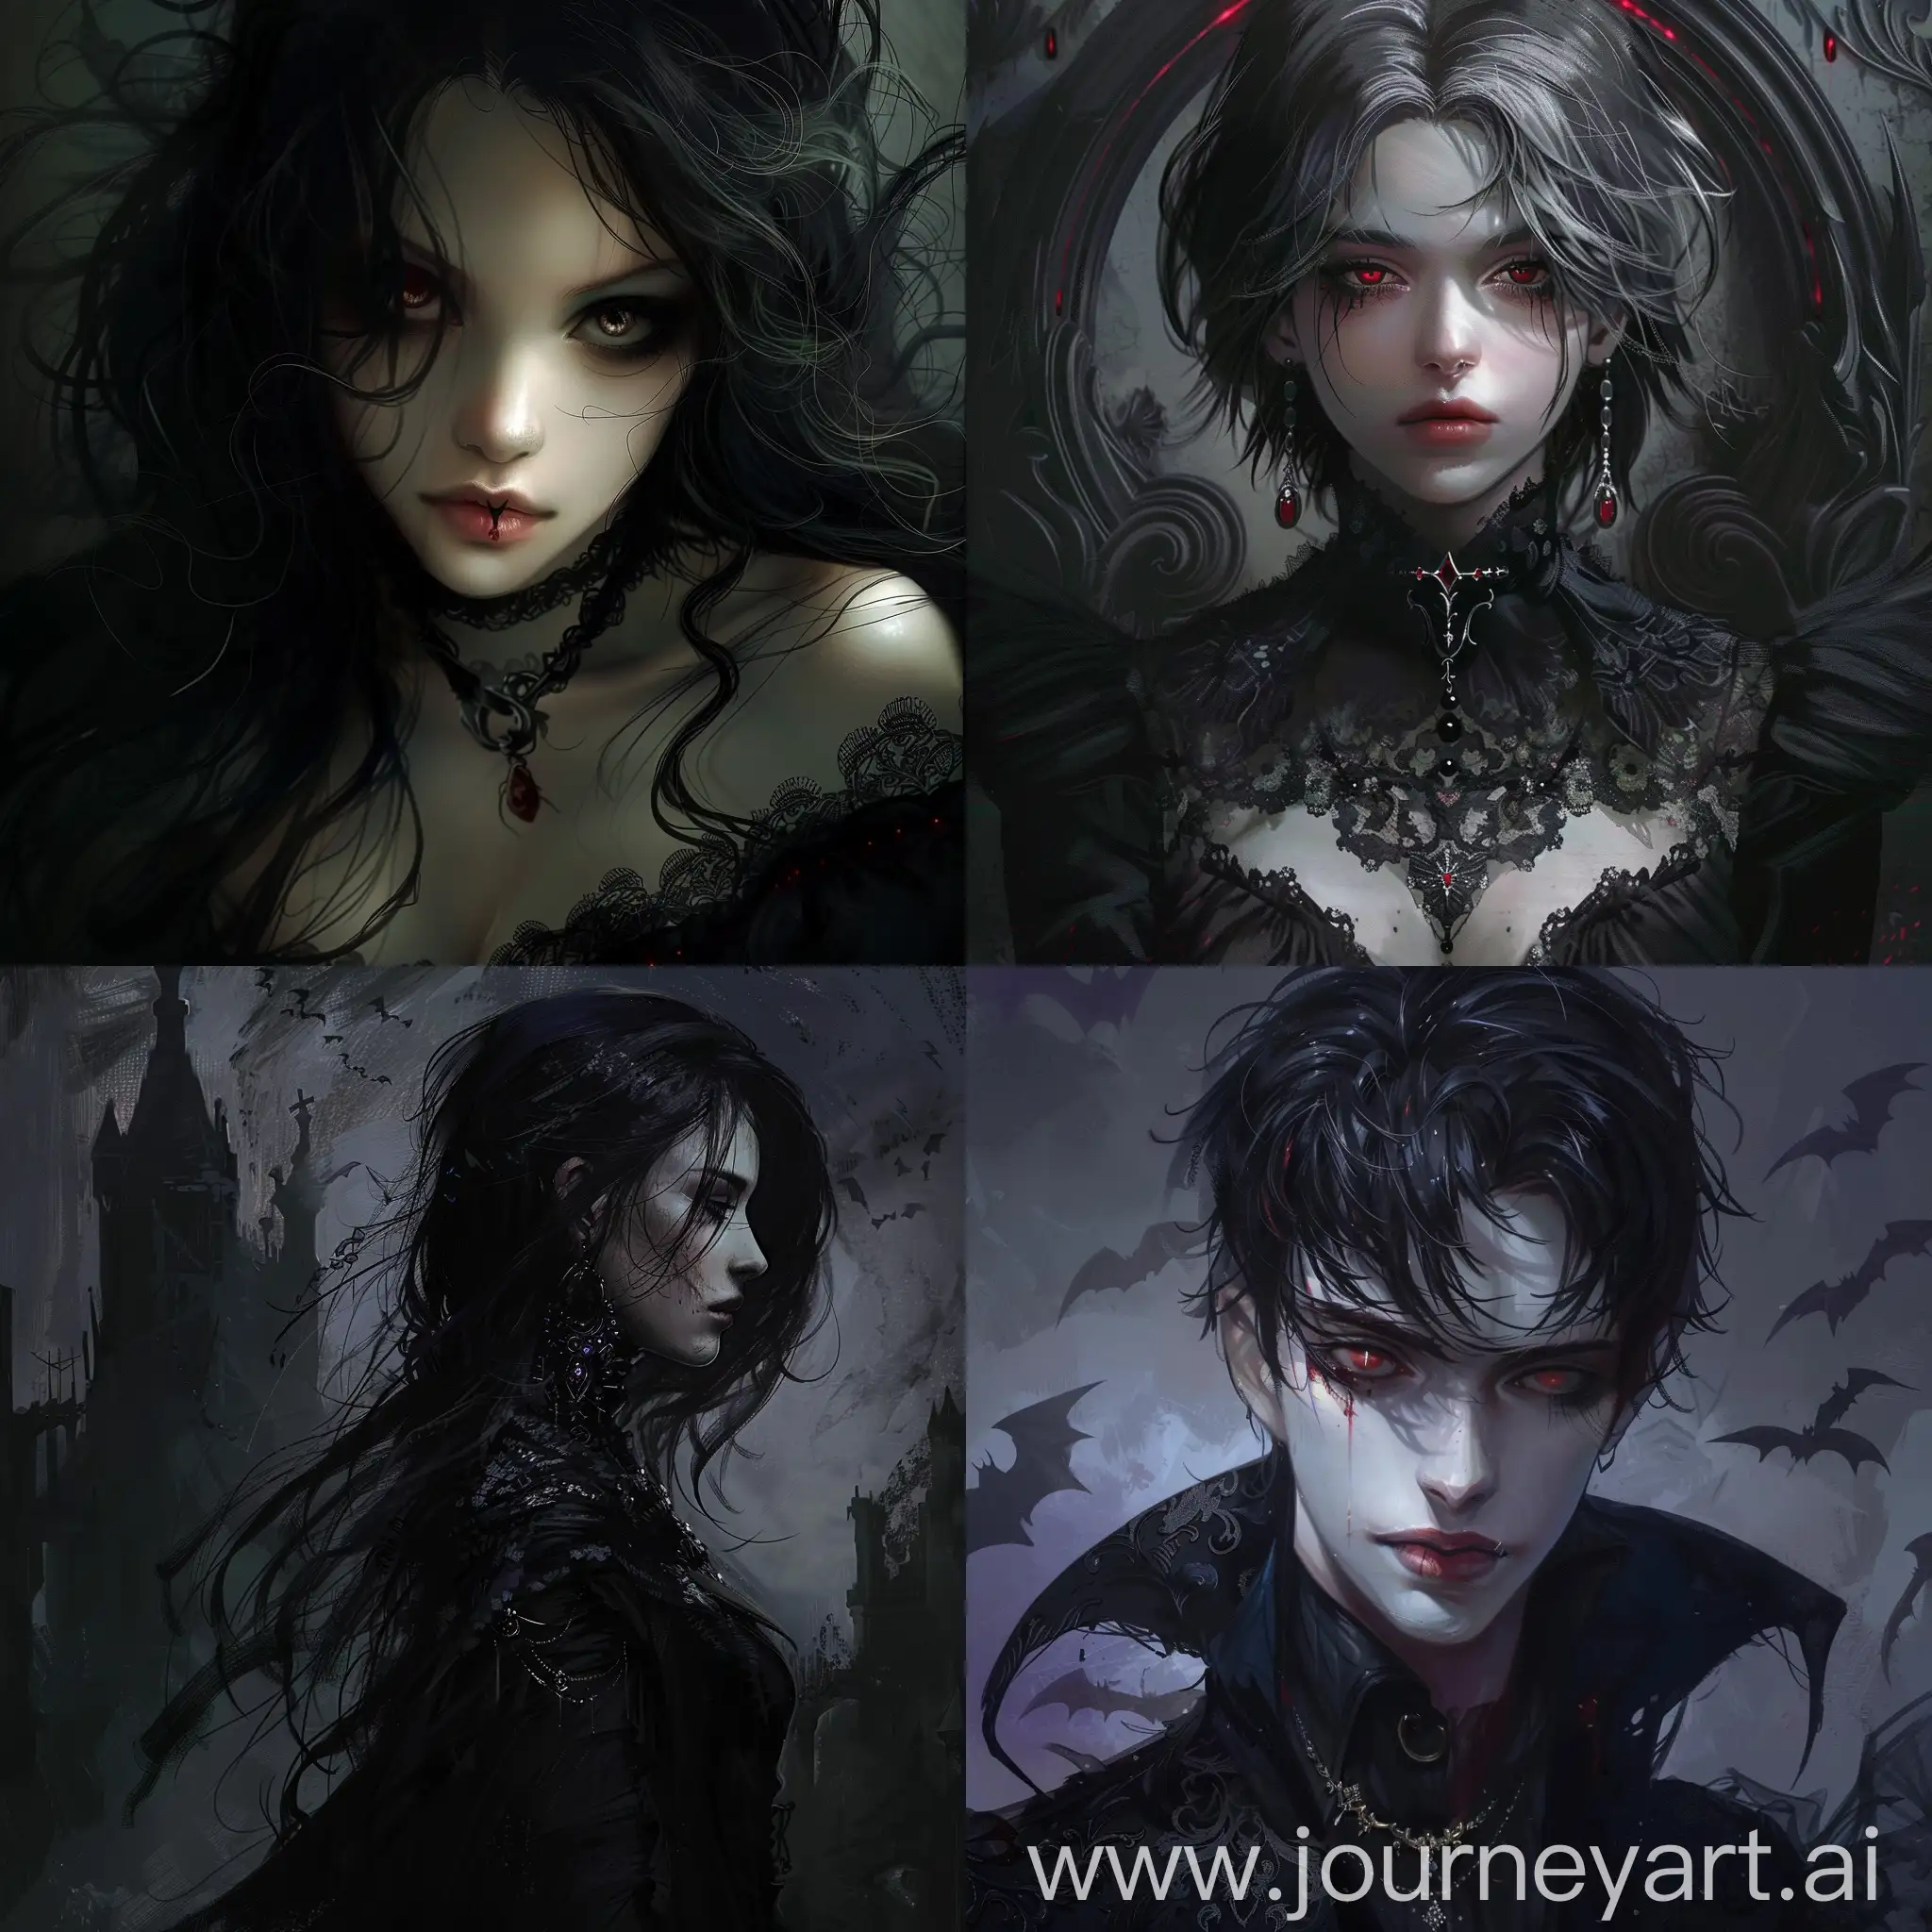 Dark fantasy, gothic horror, anime style, vampire